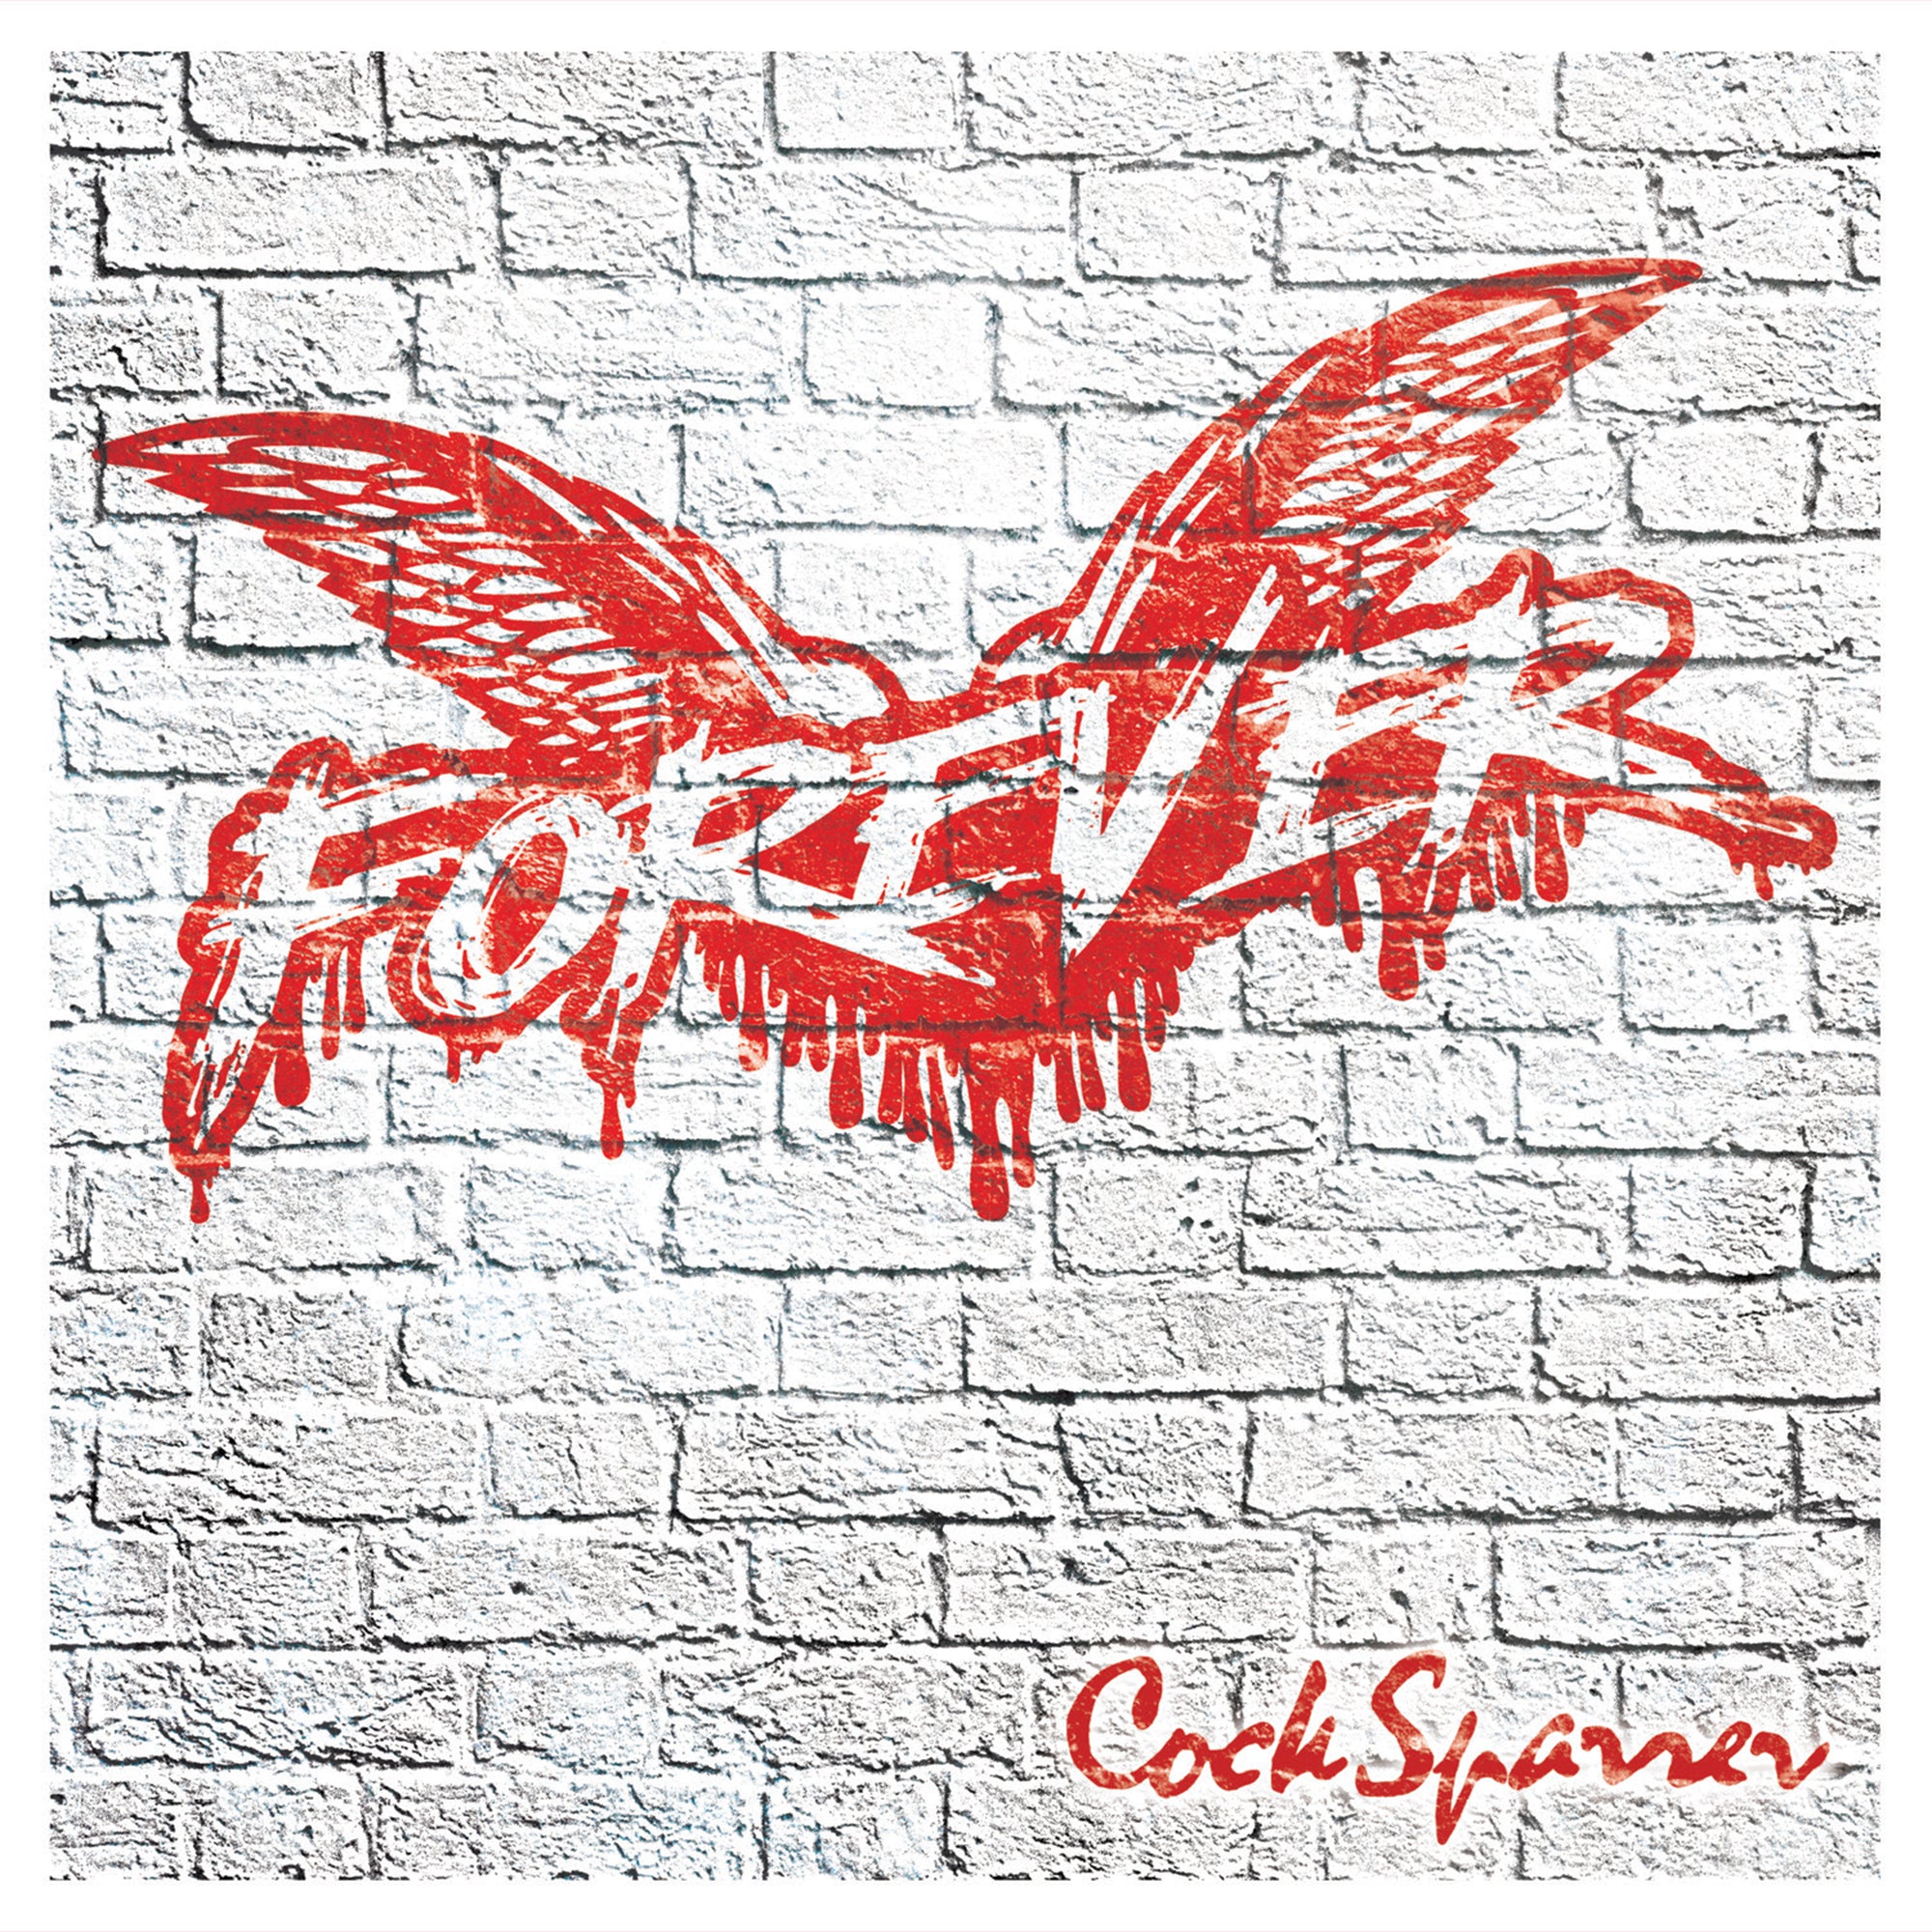 Cock Sparrer - Forever Deluxe Claret & Blue Asidebside Vinyl LP